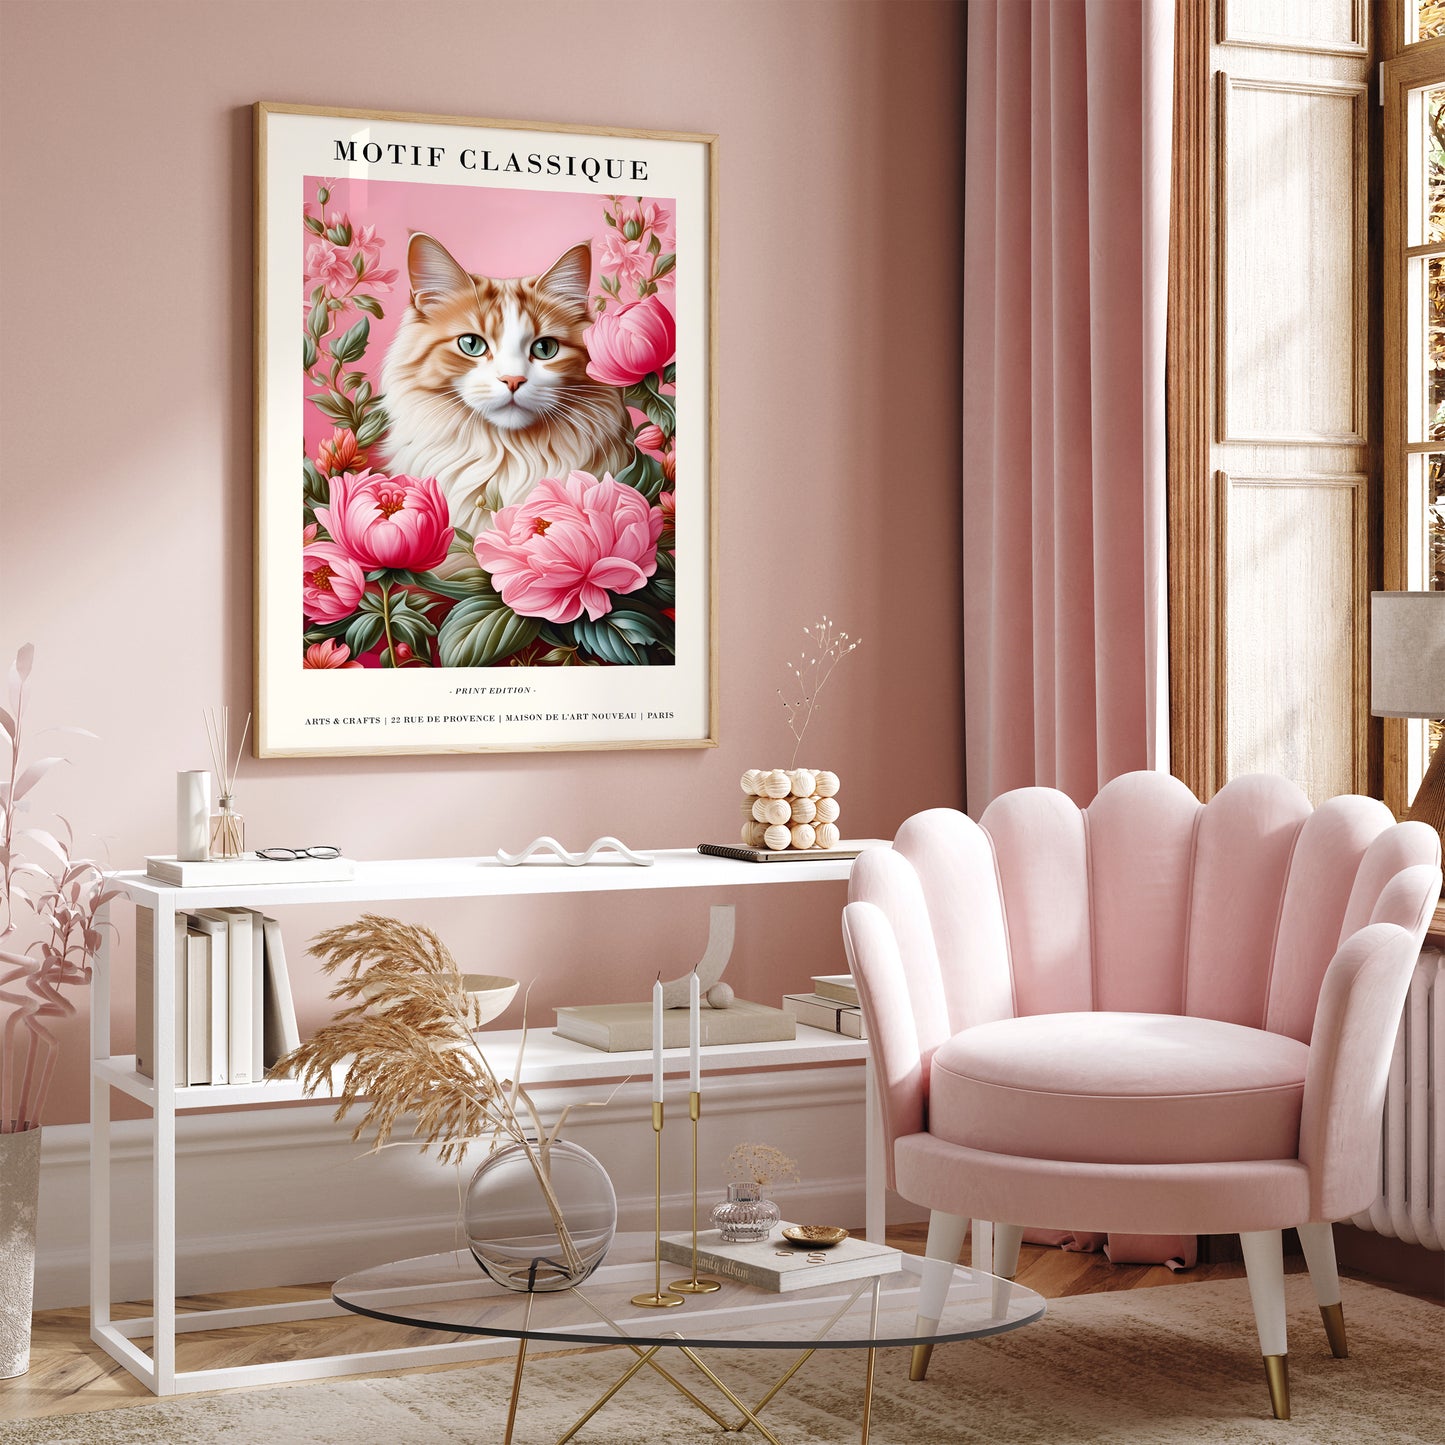 Cute Pink Cat Portrait in Art Nouveau Style Wall Art